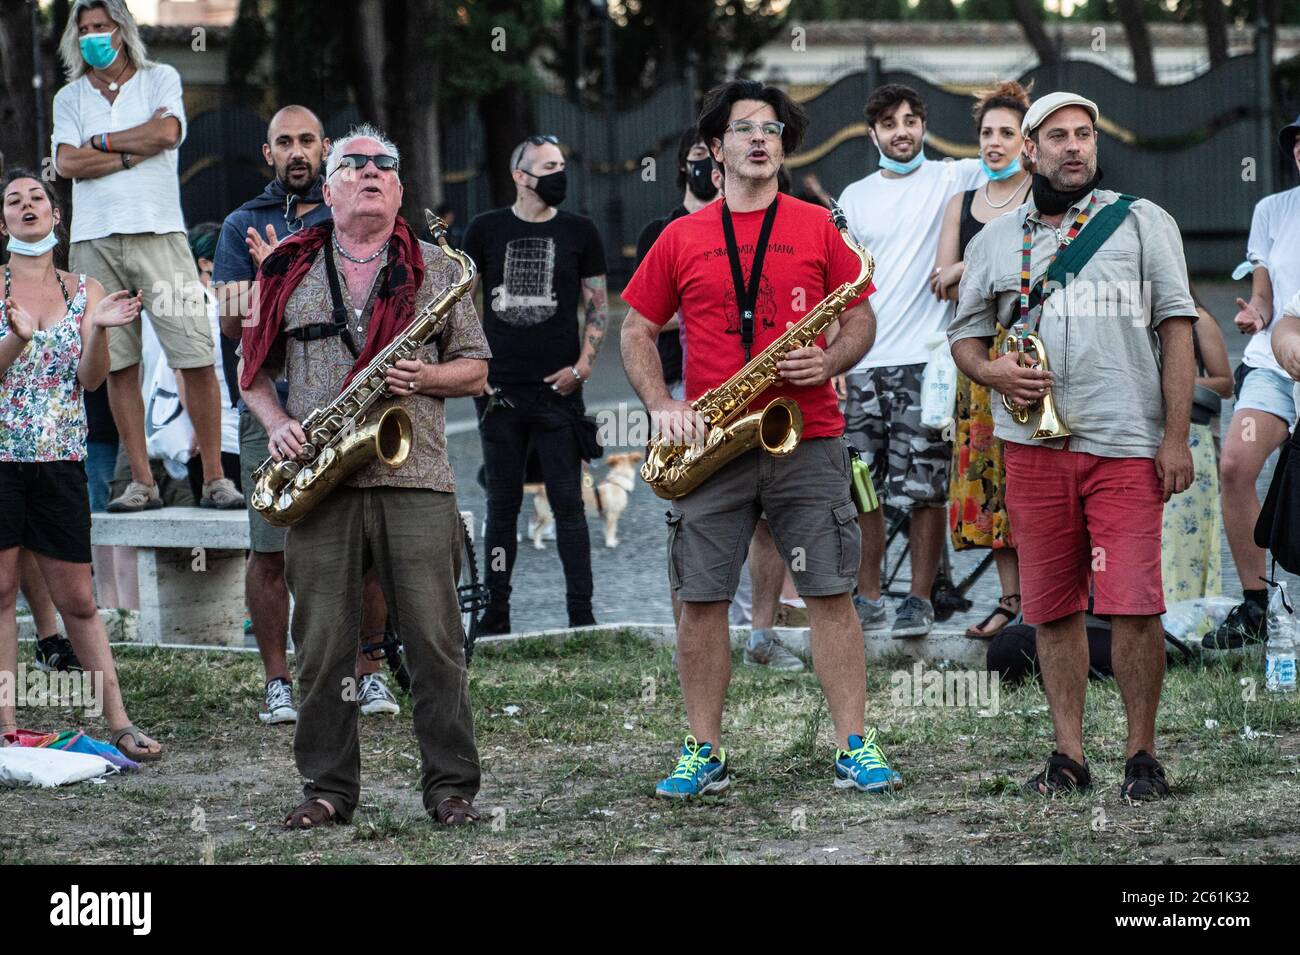 Les musiciens jouent la chanson 'Bella ciao' à 'sati Popolari', événement organisé à Piazza San Giovanni, à Rome, Italie, par Aboubakar Soumahoro, syndicaliste italo-ivoirien de la coordination agricole de l'Union de base (USB) Banque D'Images